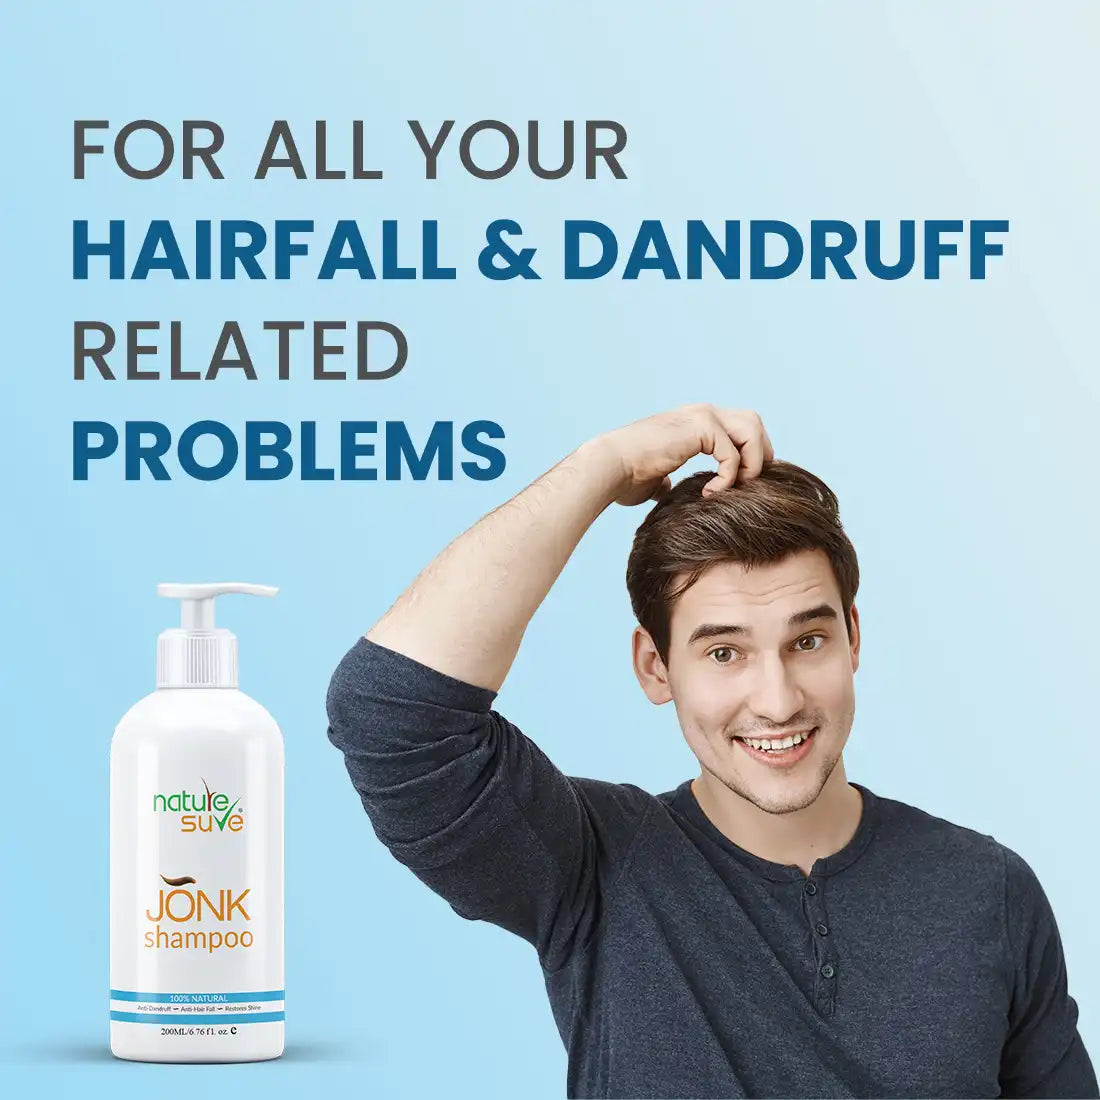 Nature Sure Jonk Shampoo Hair Cleanser for Men & Women 300ml